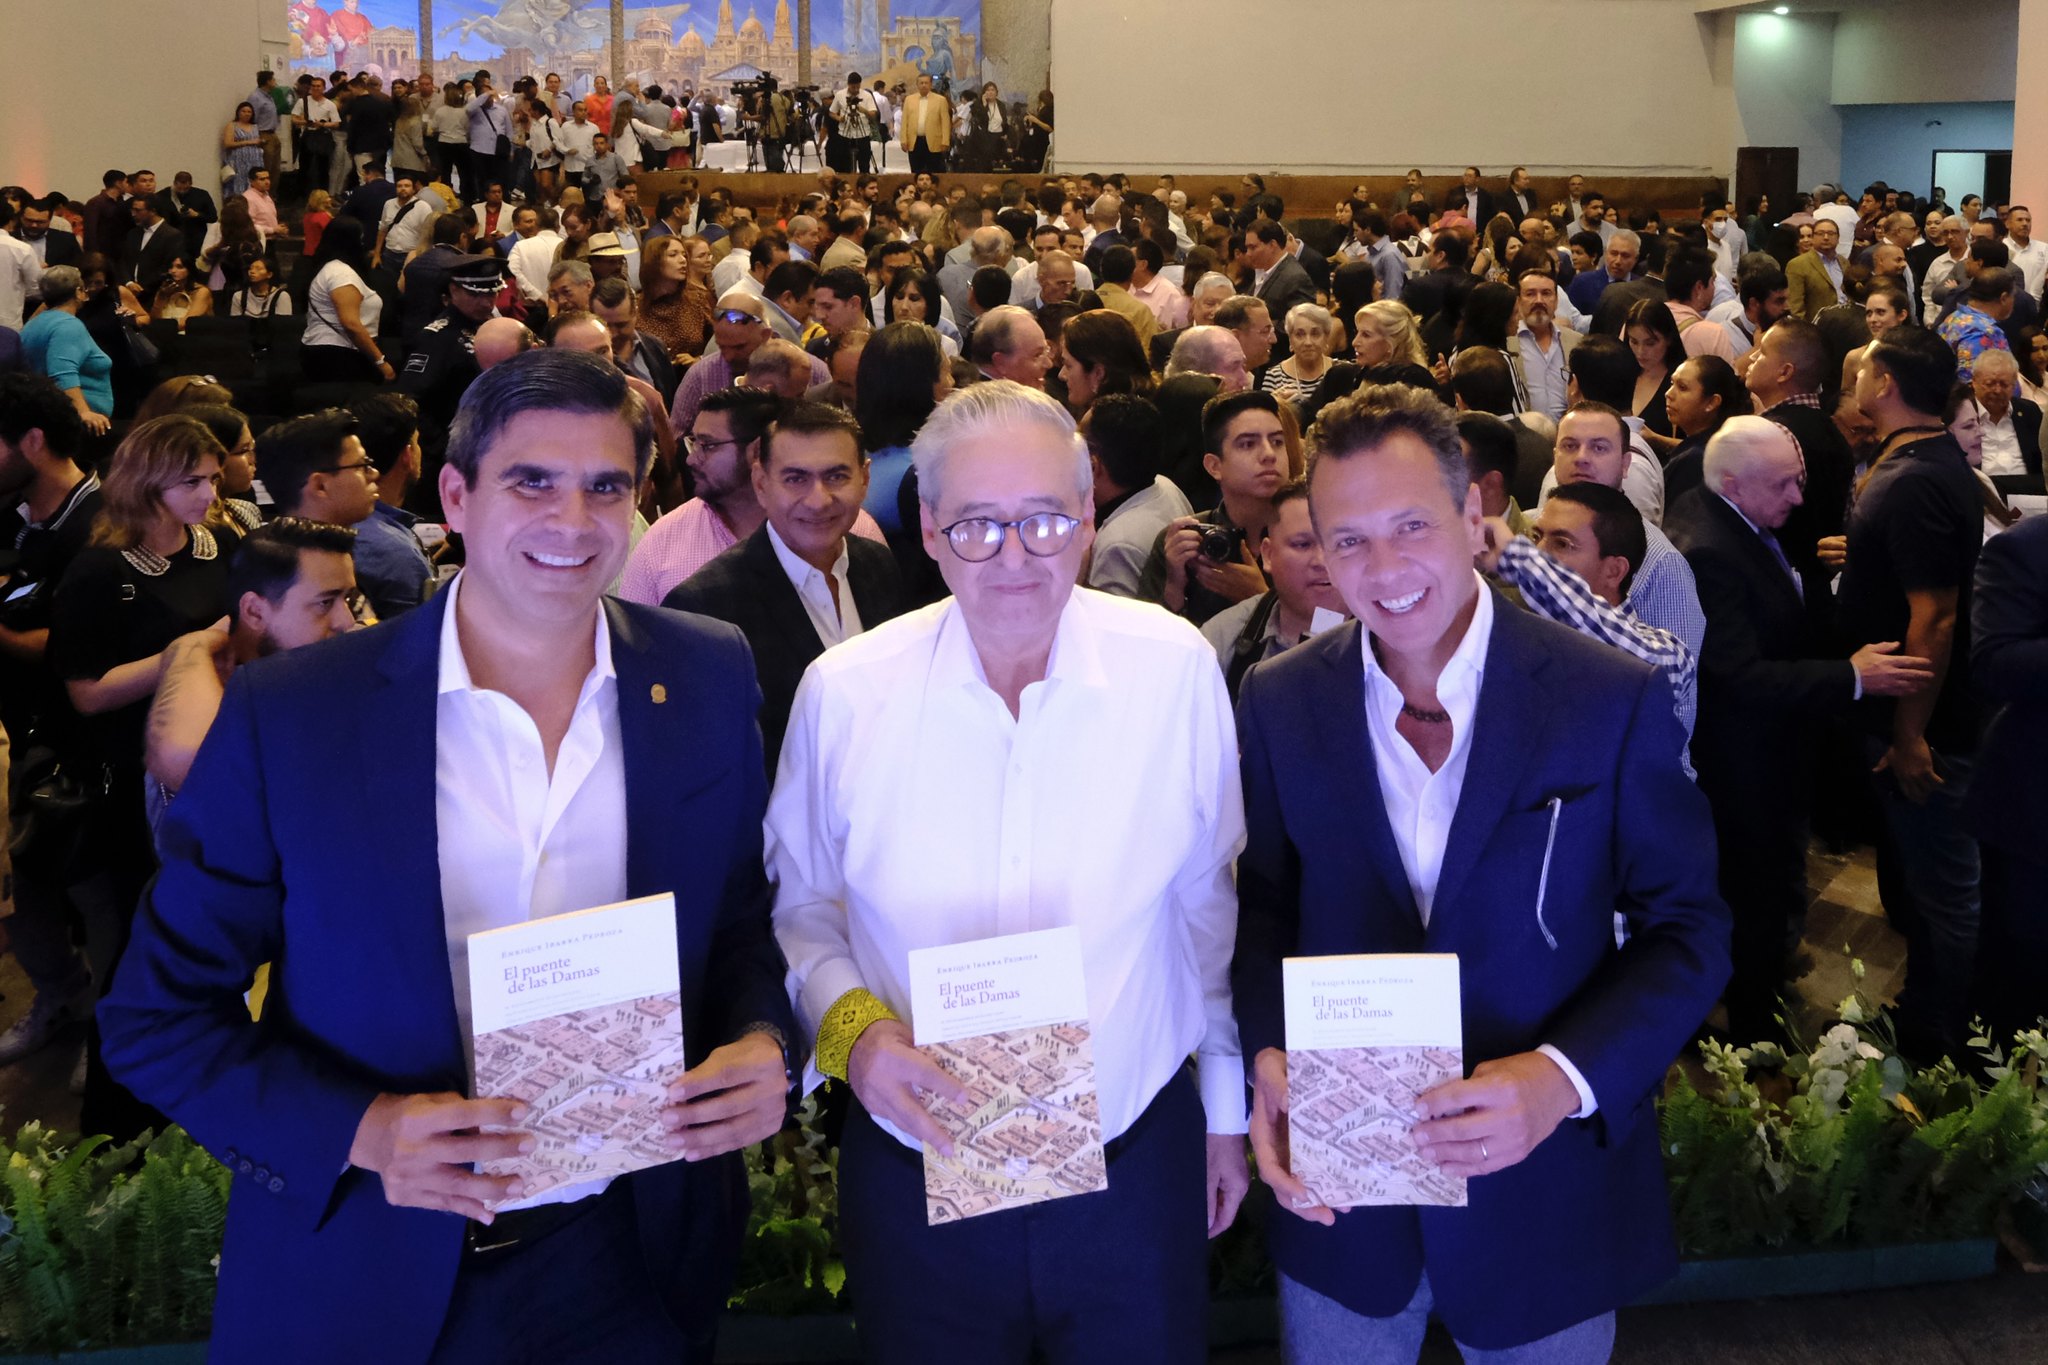 Enrique Ibarra Pedroza presenta la cuarta edición del libro "El Puente de las Damas"